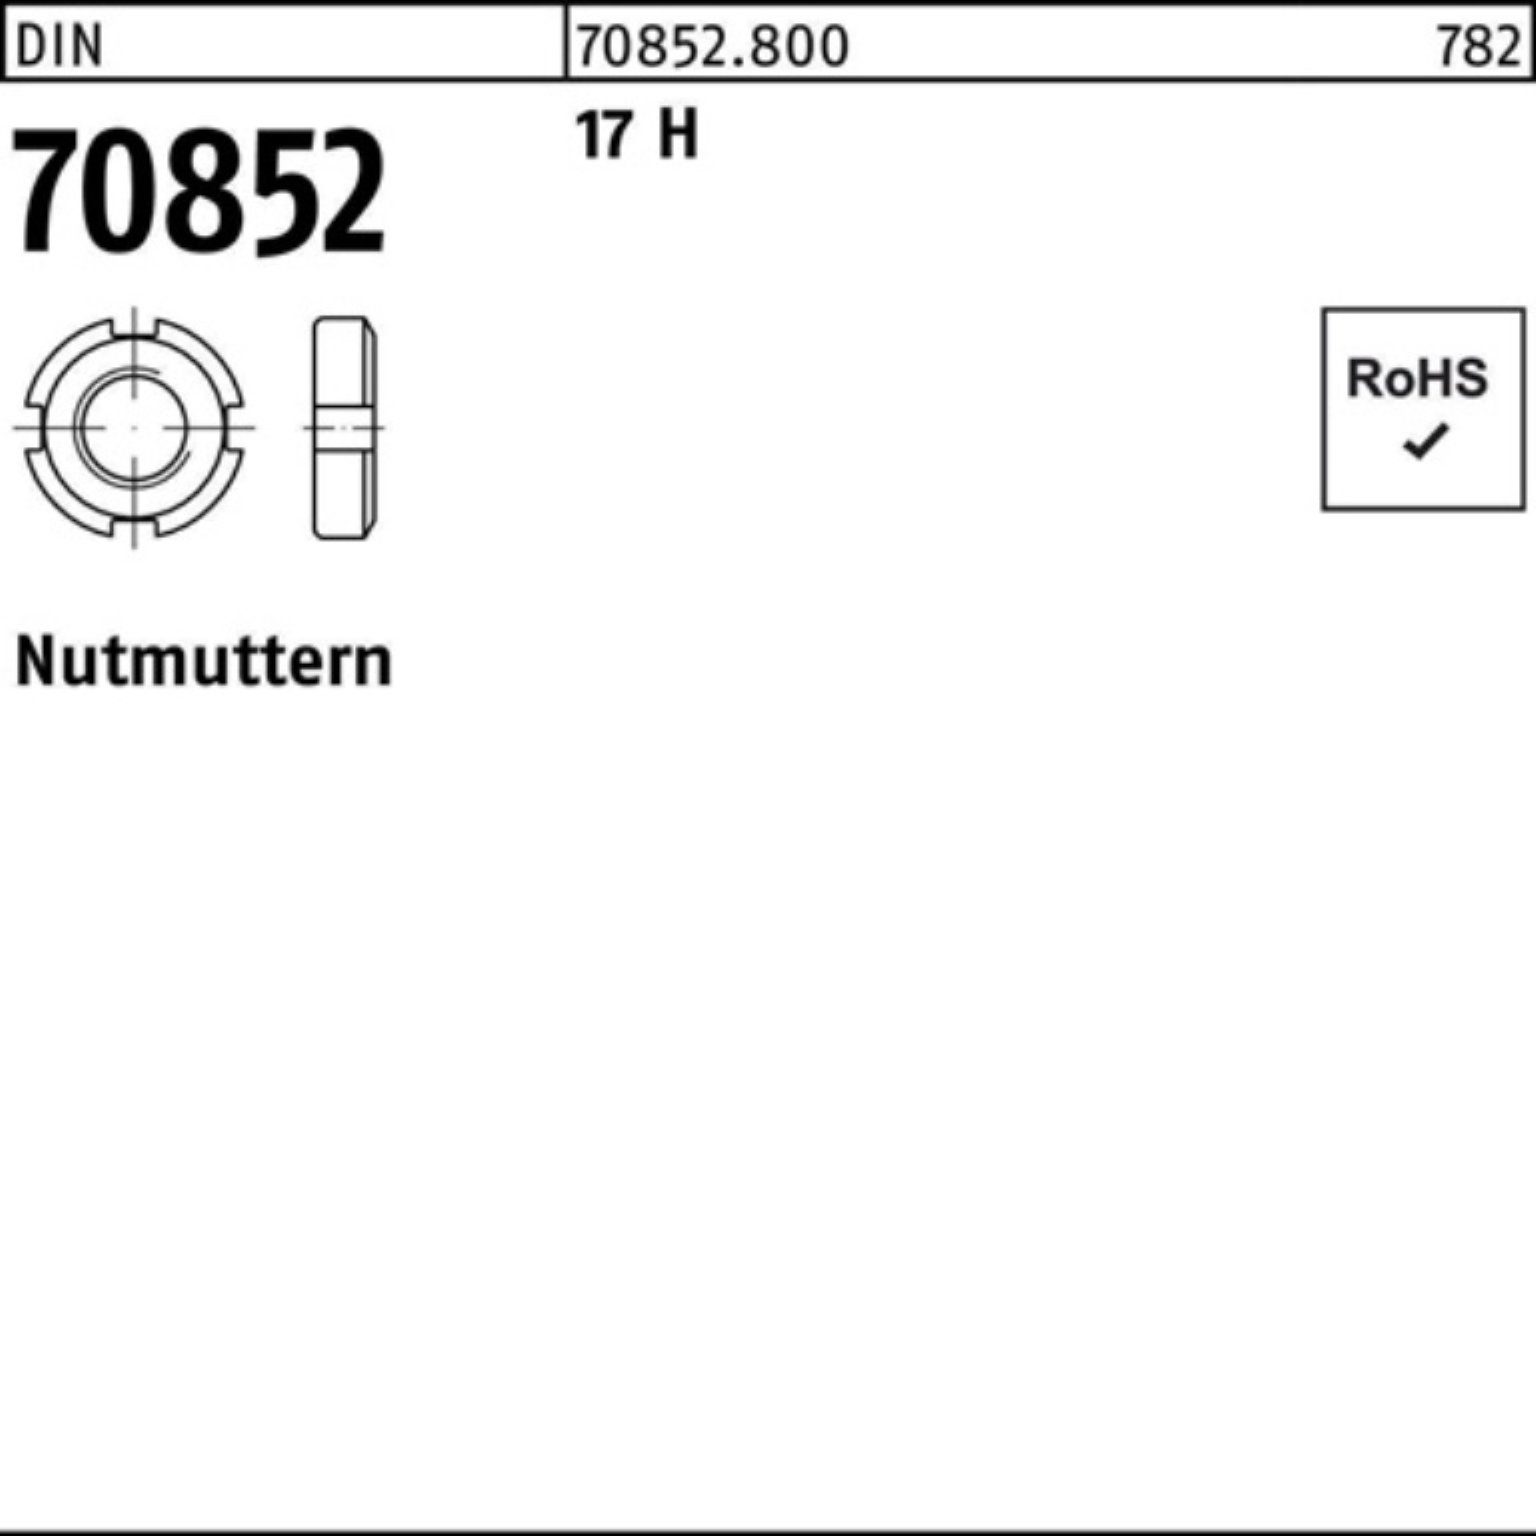 DIN DIN 17 M50x Pack Nutmutter 1 100er Reyher 70852 H 17 H 1,5 N Nutmutter 70852 Stück